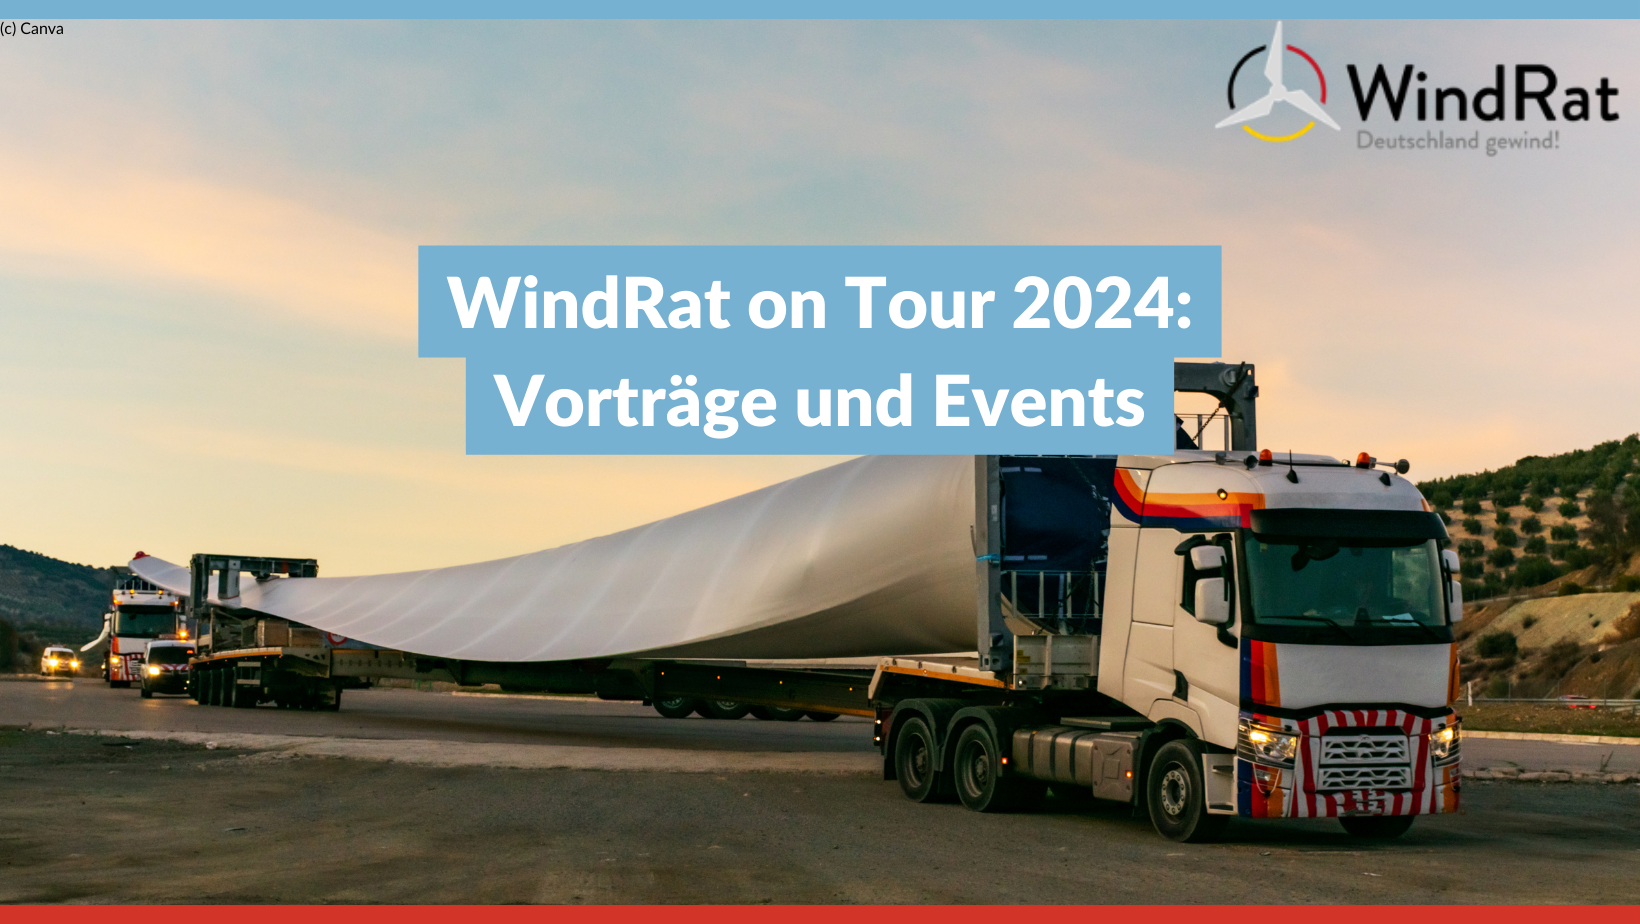 Transport eines Windrad-Flügels per LKW bei Sonnenuntergang auf Straße in Bergkulisse. Text im Bild: "WindRat on Tour 2024: Vorträge und Events"